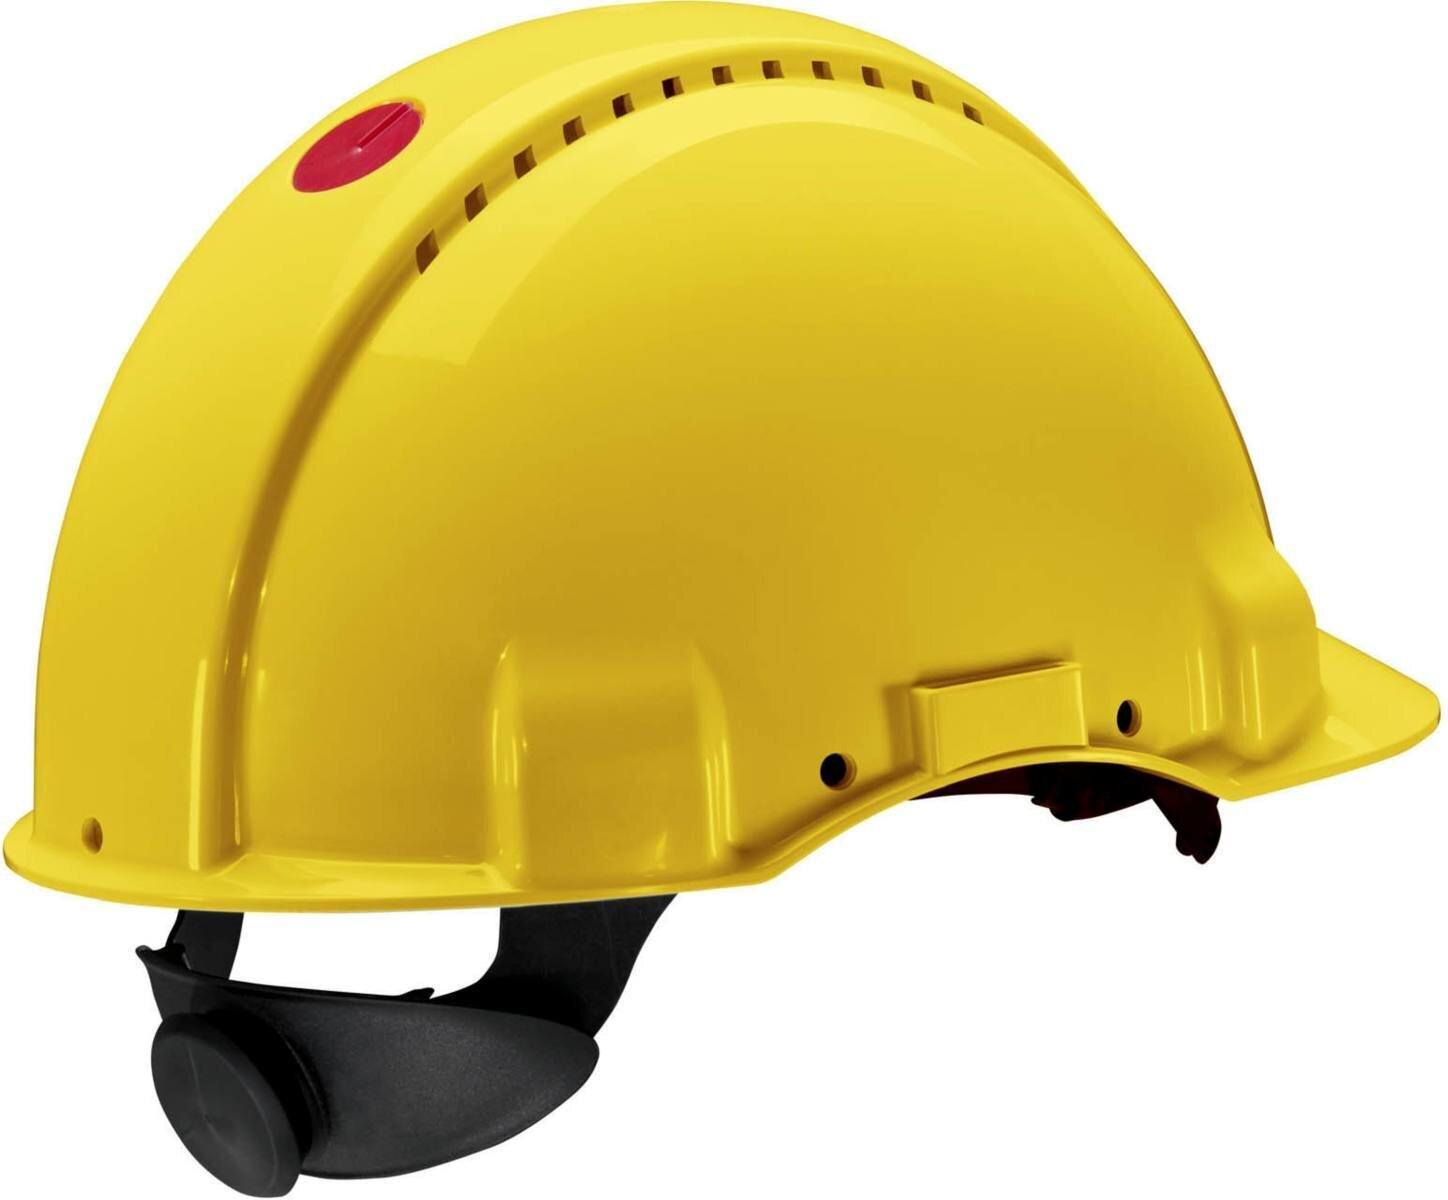 elmetto di sicurezza 3M G3000 G30NUY di colore giallo, ventilato, con uvicatore, cricchetto e cinturino in plastica per saldatura